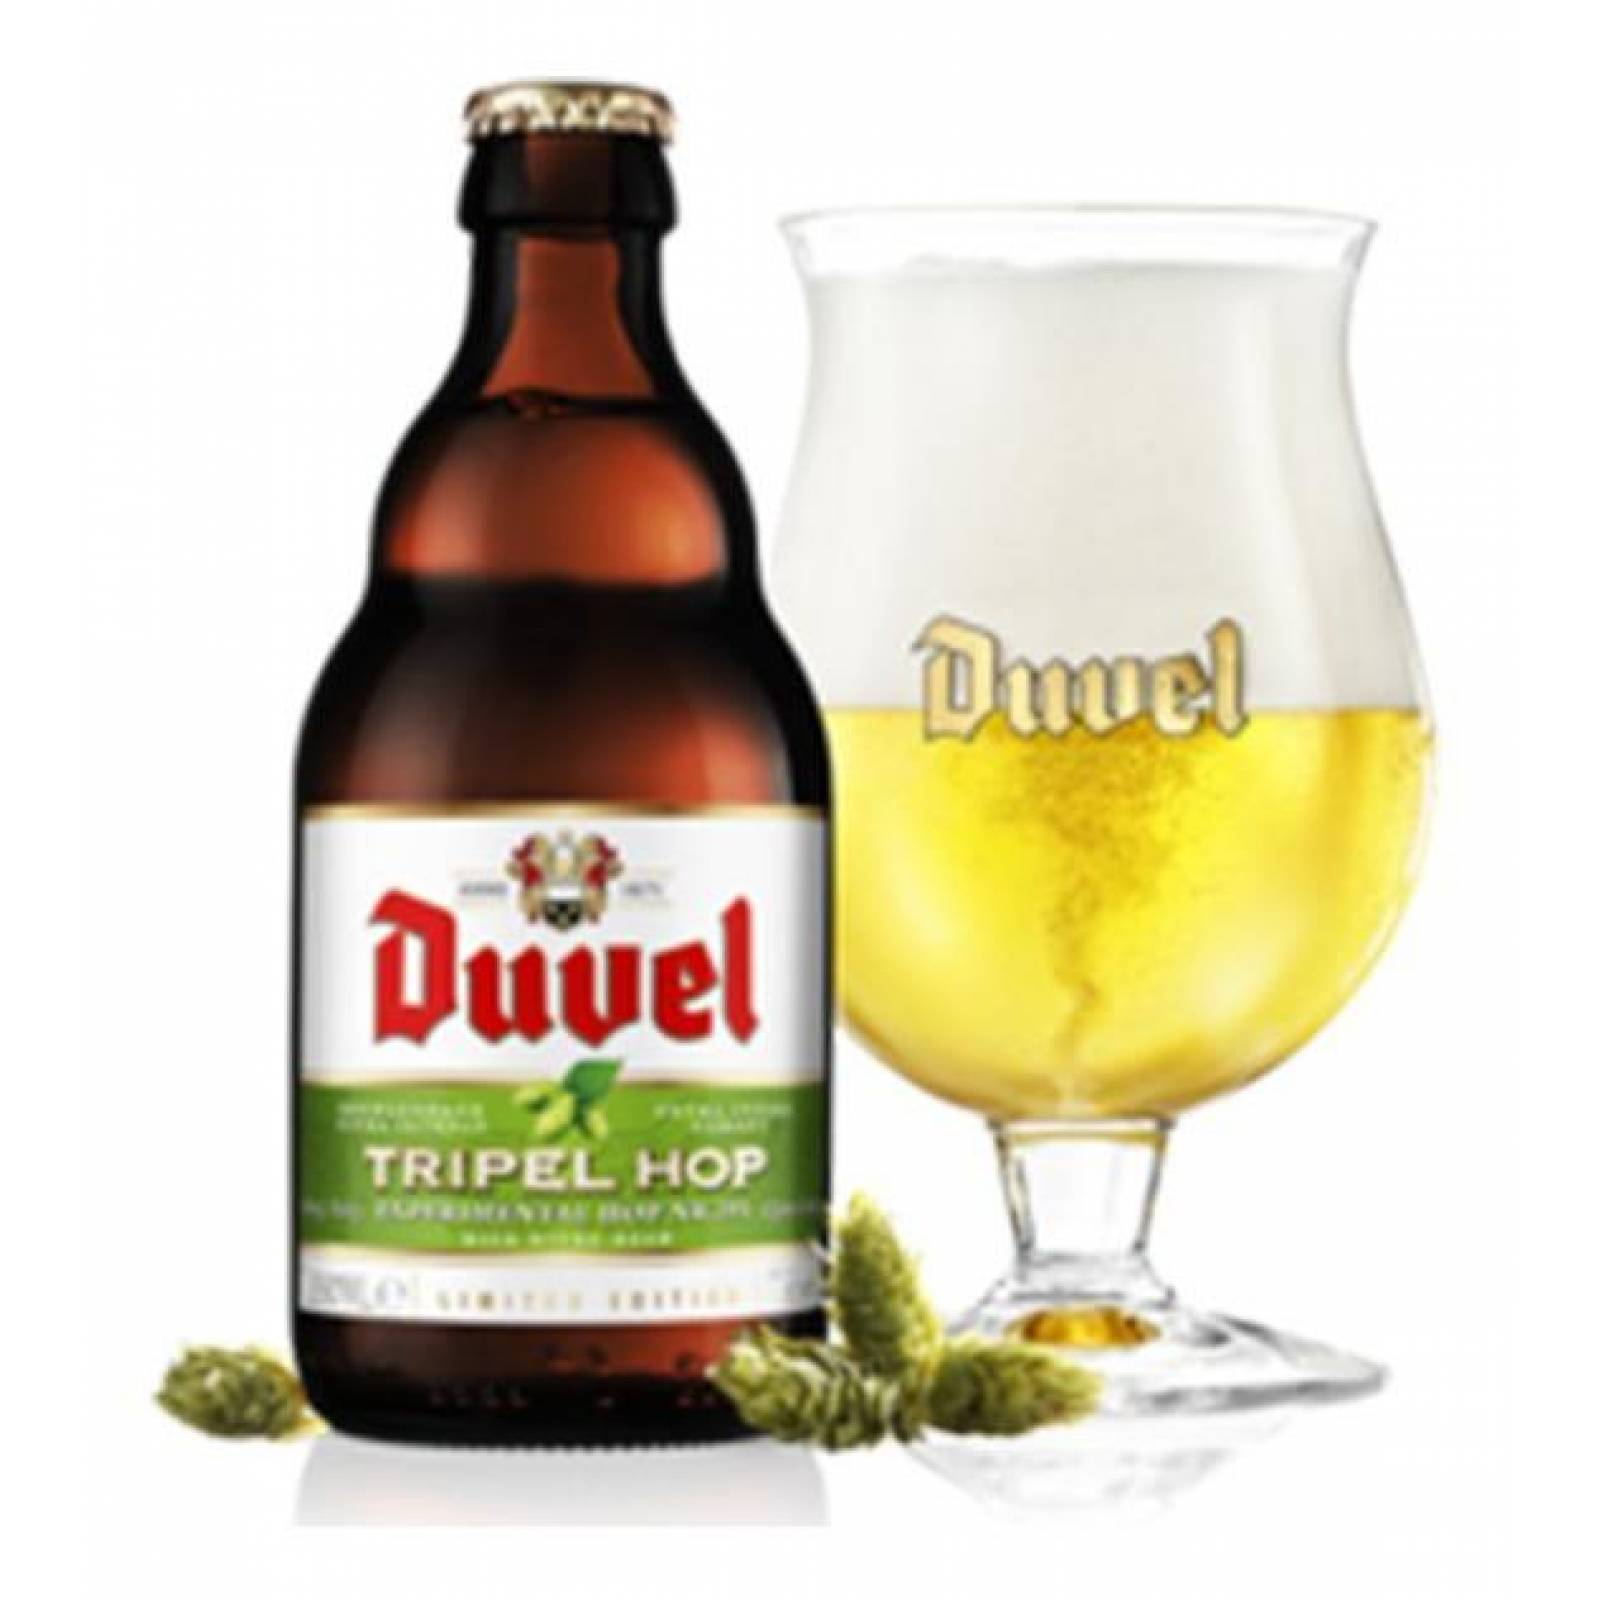 Cerveza Duvel Tripel Hop Citra 3 Botellas 330ml C/u 